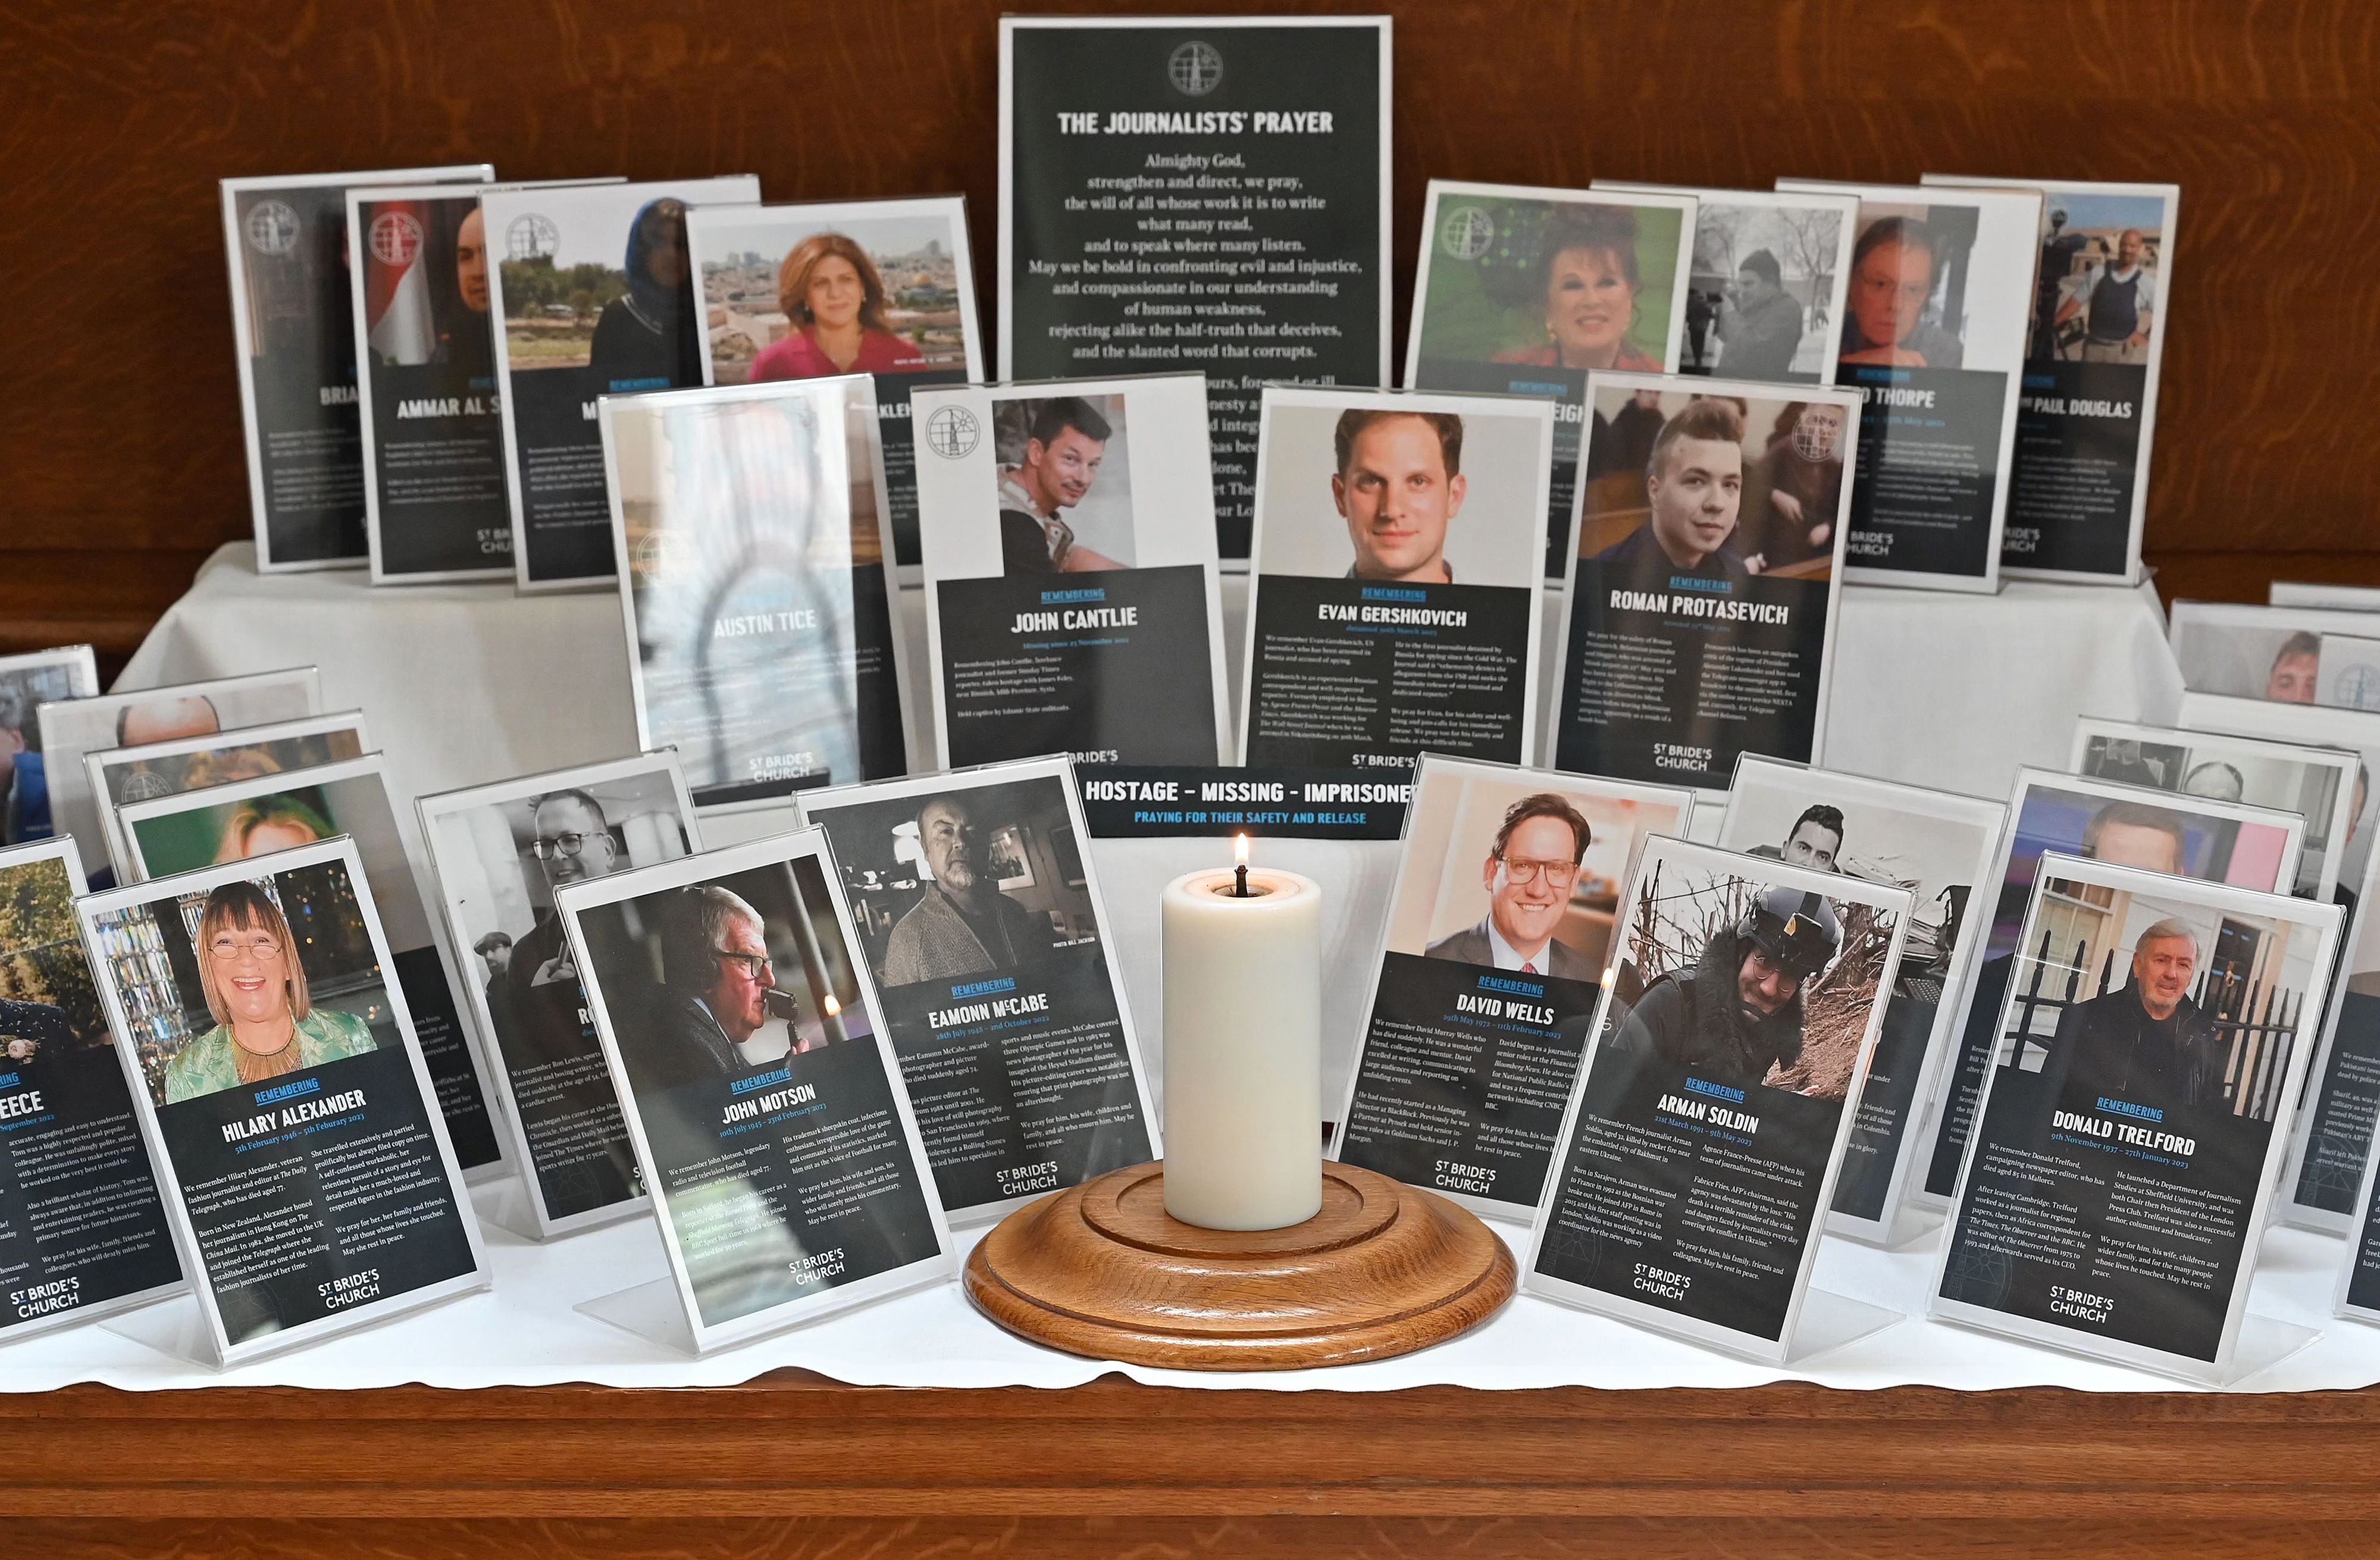 Un homenaje al videoperiodista de AFP Arman Soldin se muestra entre los homenajes a otros periodistas, en la iglesia de St Bride en el centro de Londres 